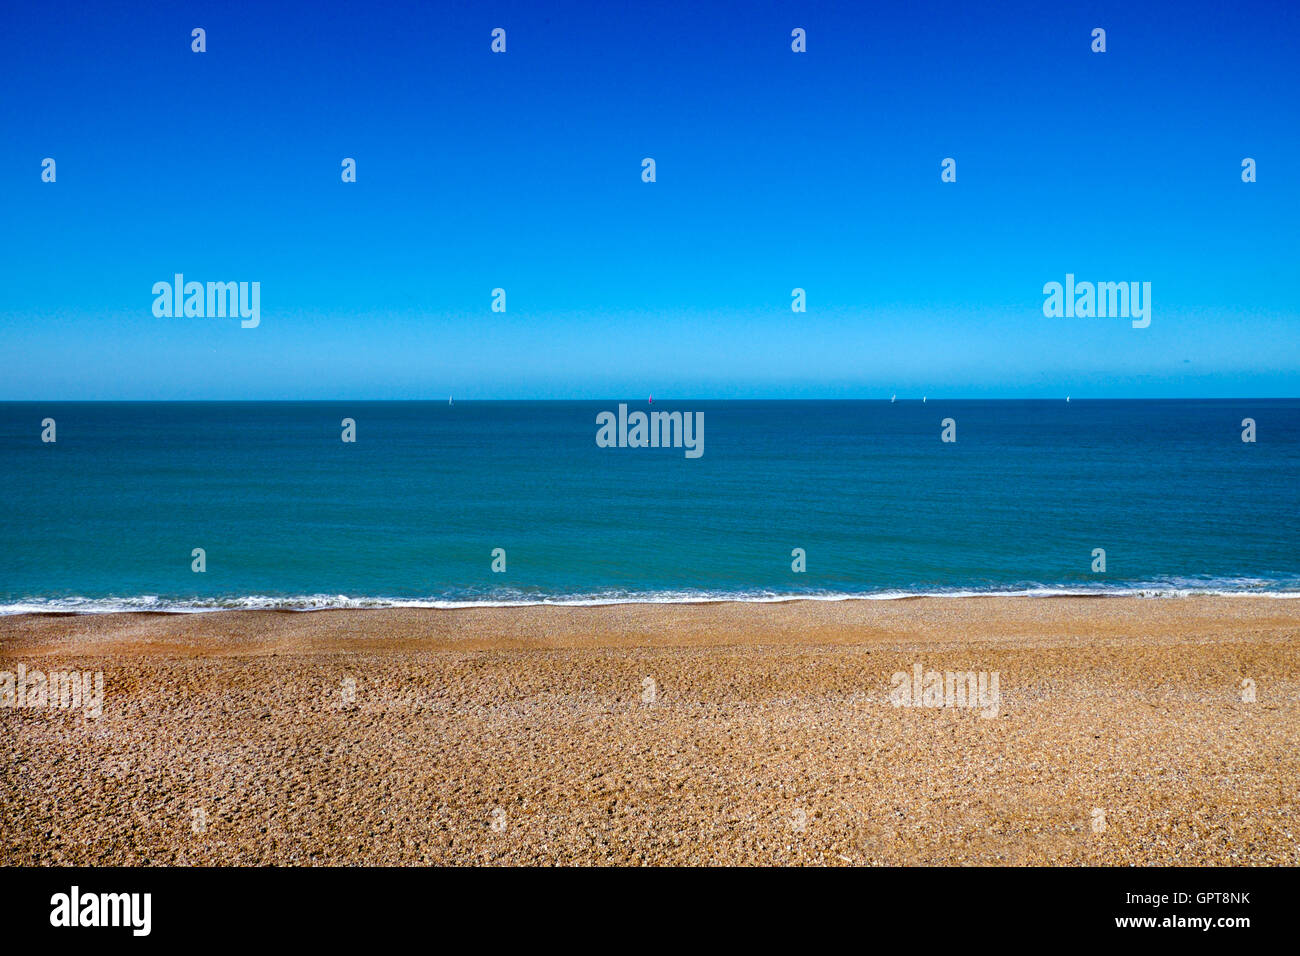 La plage de Seaford, East Sussex, Royaume-Uni. 1 Troisième plage vide jaune, 1 troisième mer bleu clair, 1 troisième ciel bleu clair Banque D'Images